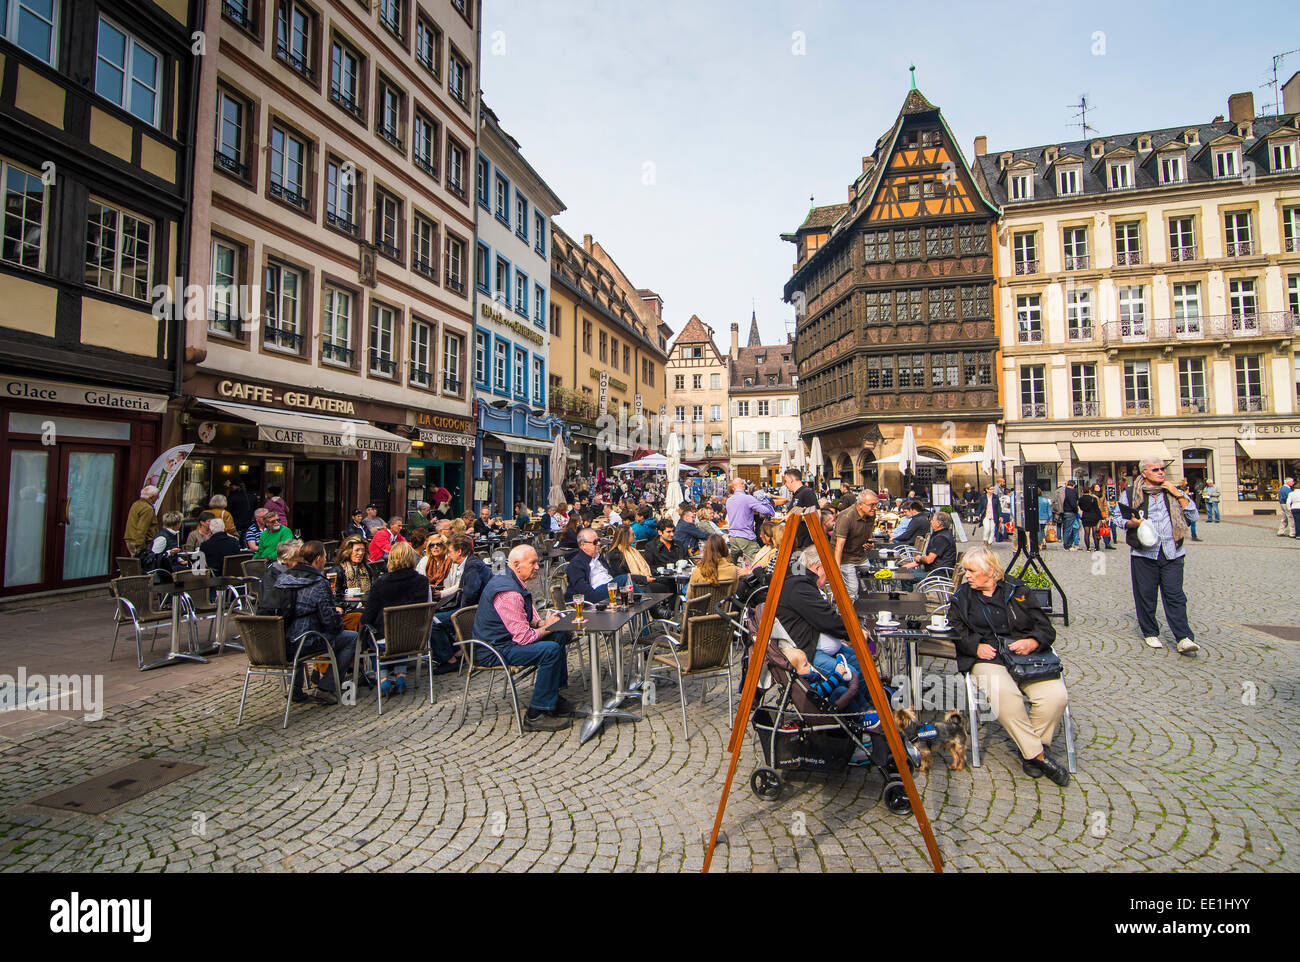 Les gens au café en plein air avec Restaurant Maison Kammerzell en arrière-plan à la place de la cathédrale, Strasbourg, Alsace, France, Europe Banque D'Images